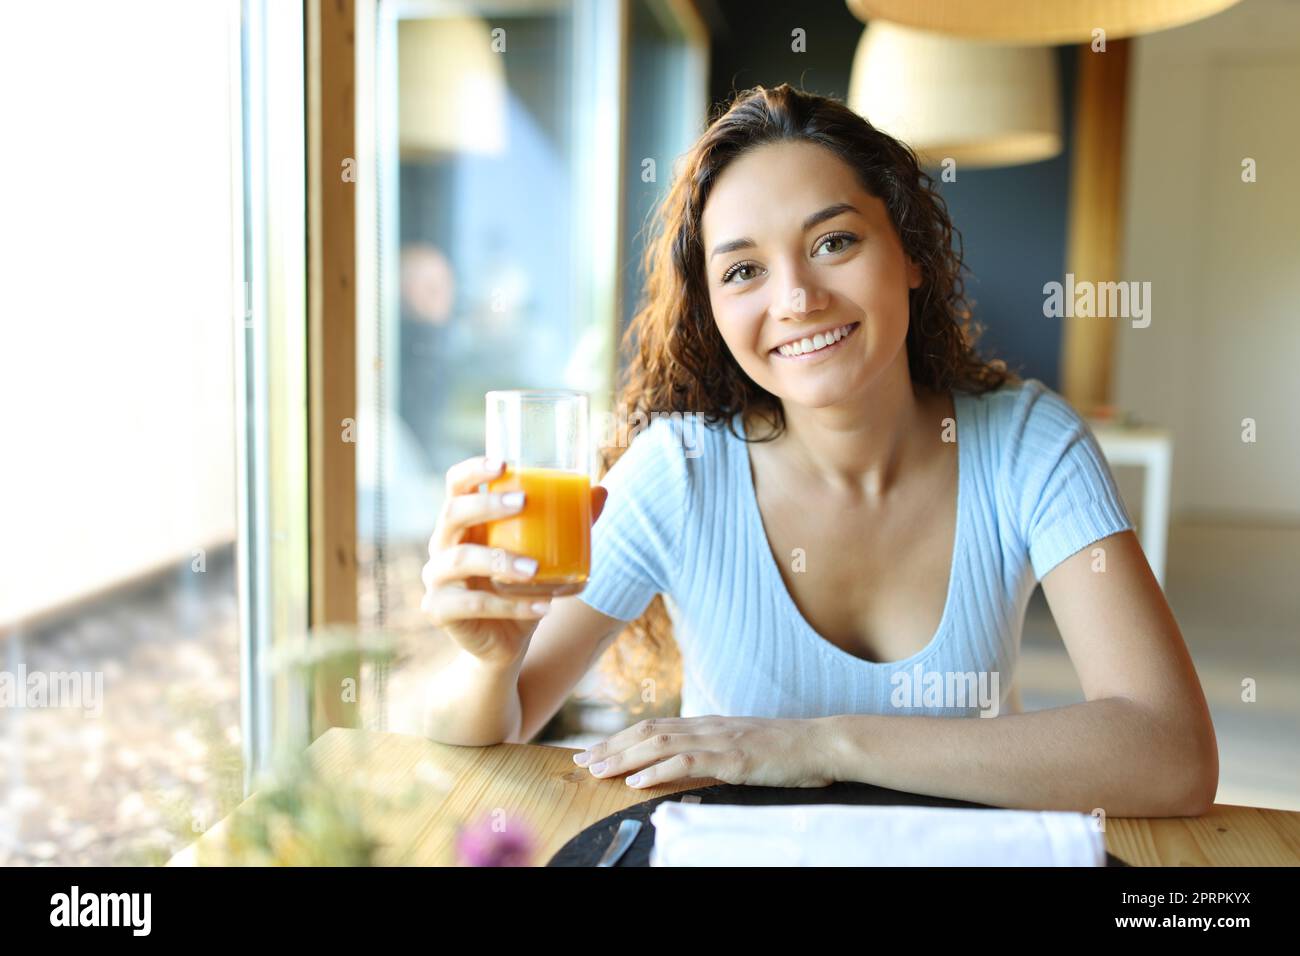 Femme tenant du jus d'orange regardant l'appareil photo Banque D'Images